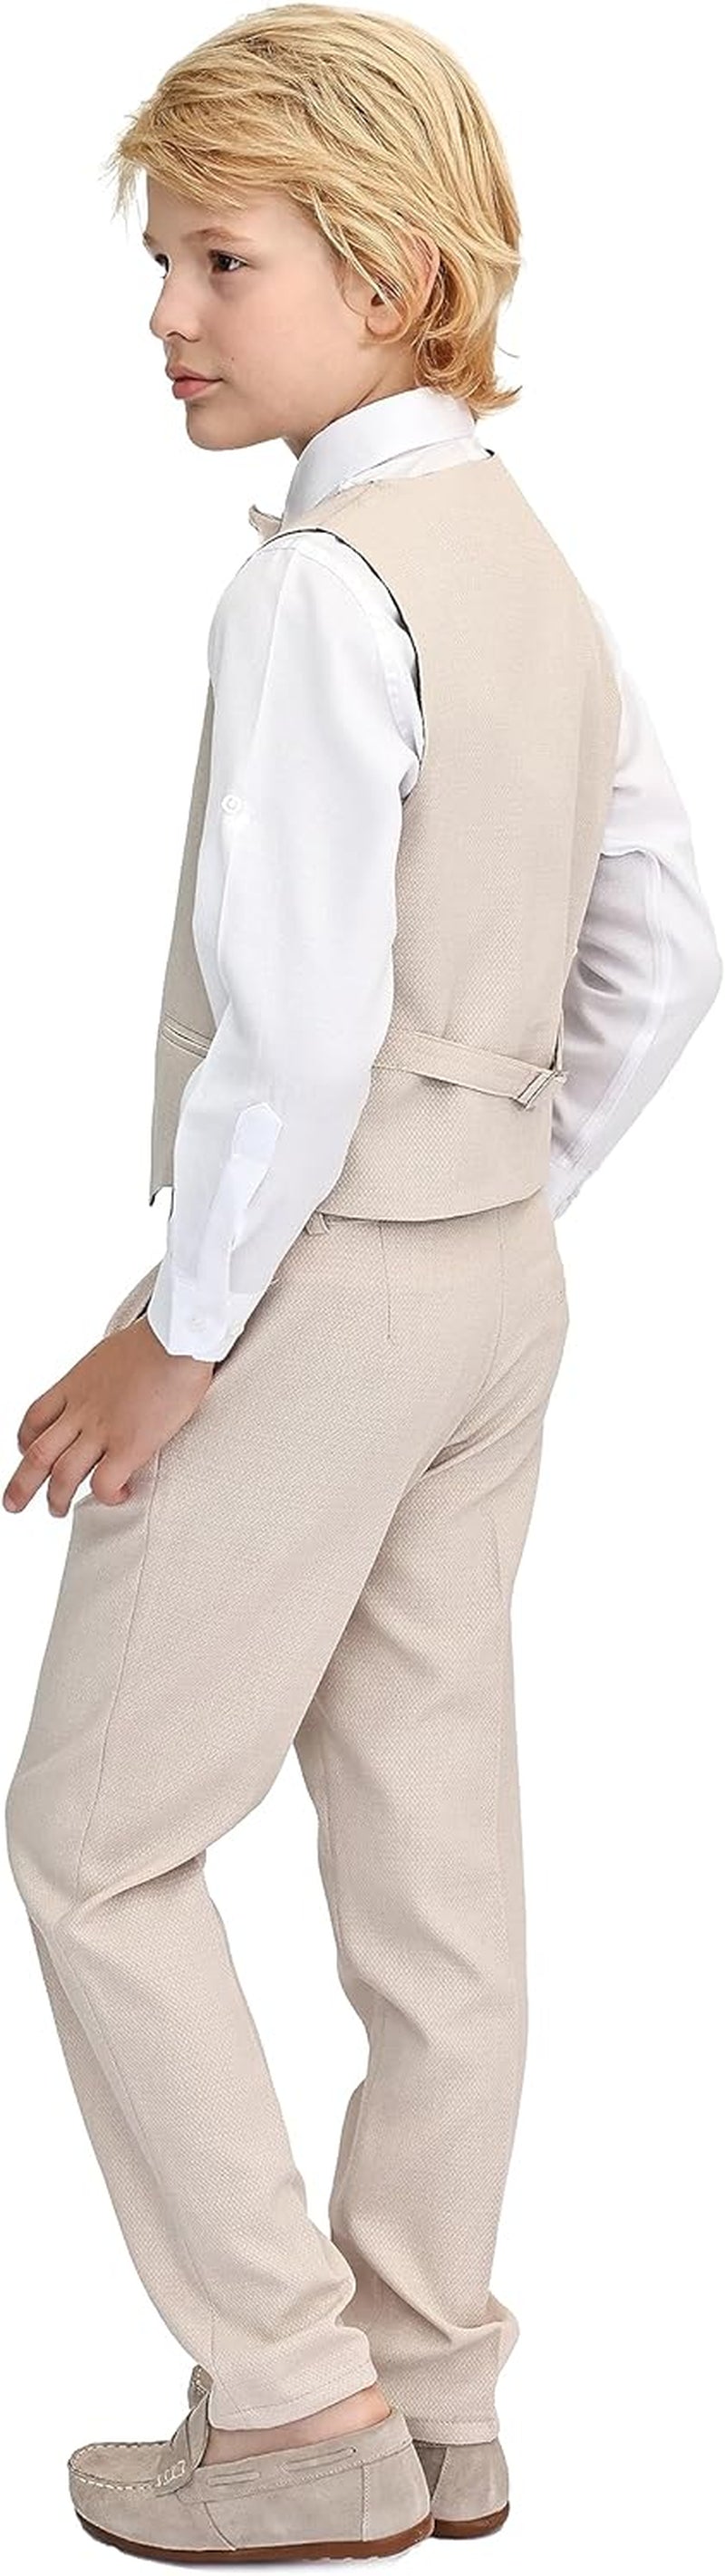 Boys Formal Suit 4 Piece Vest, Pants and Tie Dresswear Suit Set